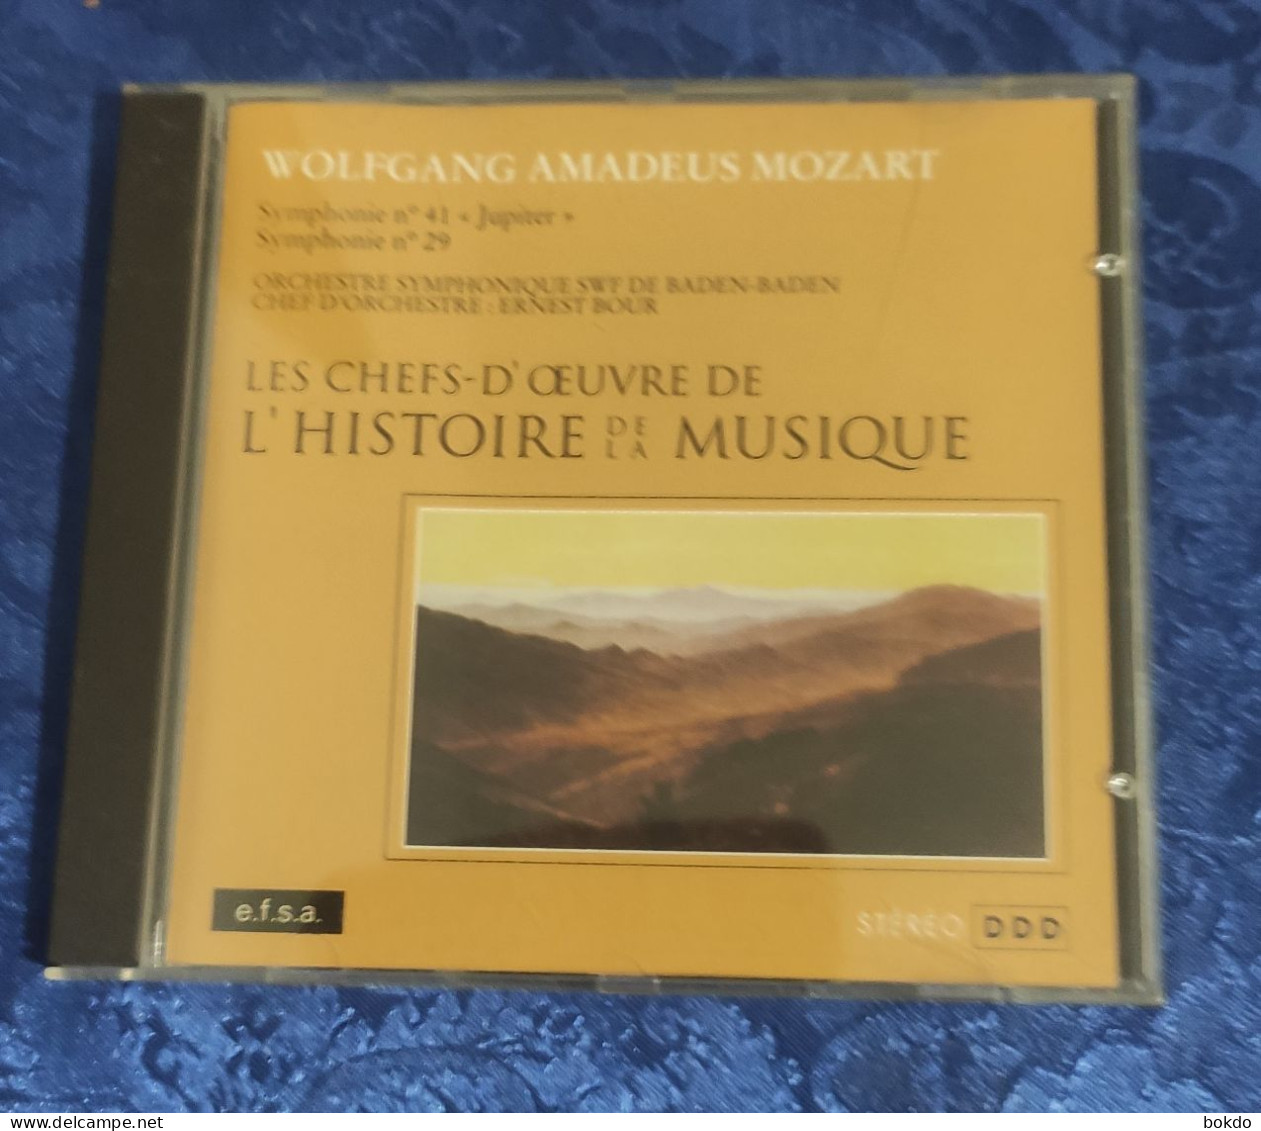 Mozart - Symphonie N° 41 Et N° 29 - Classique